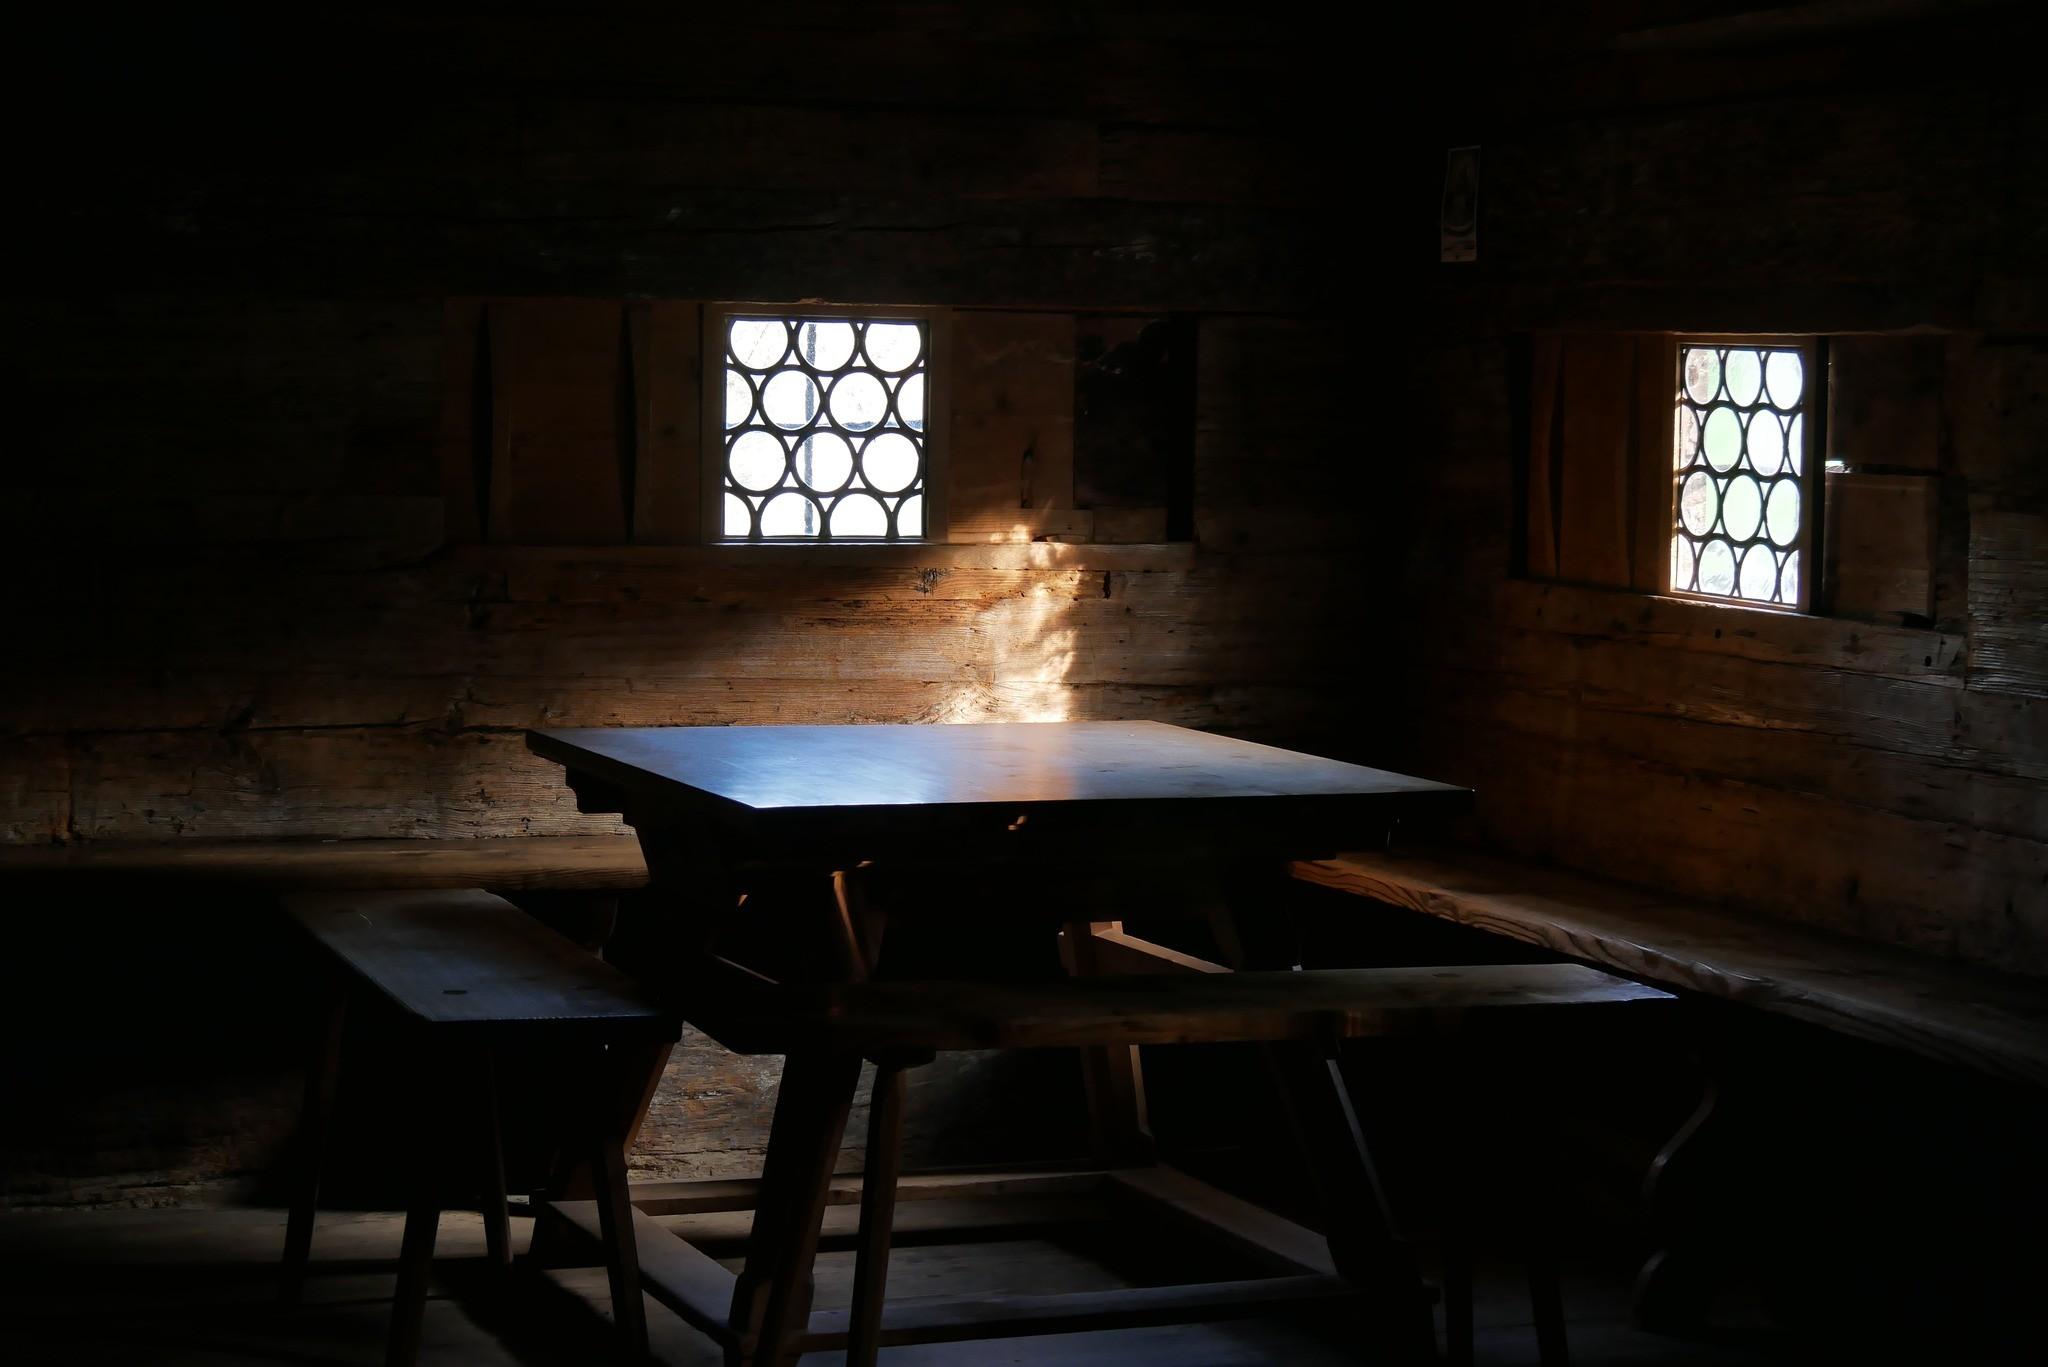 Licht fällt auf einen Tisch in einer dunklen Bauernstube